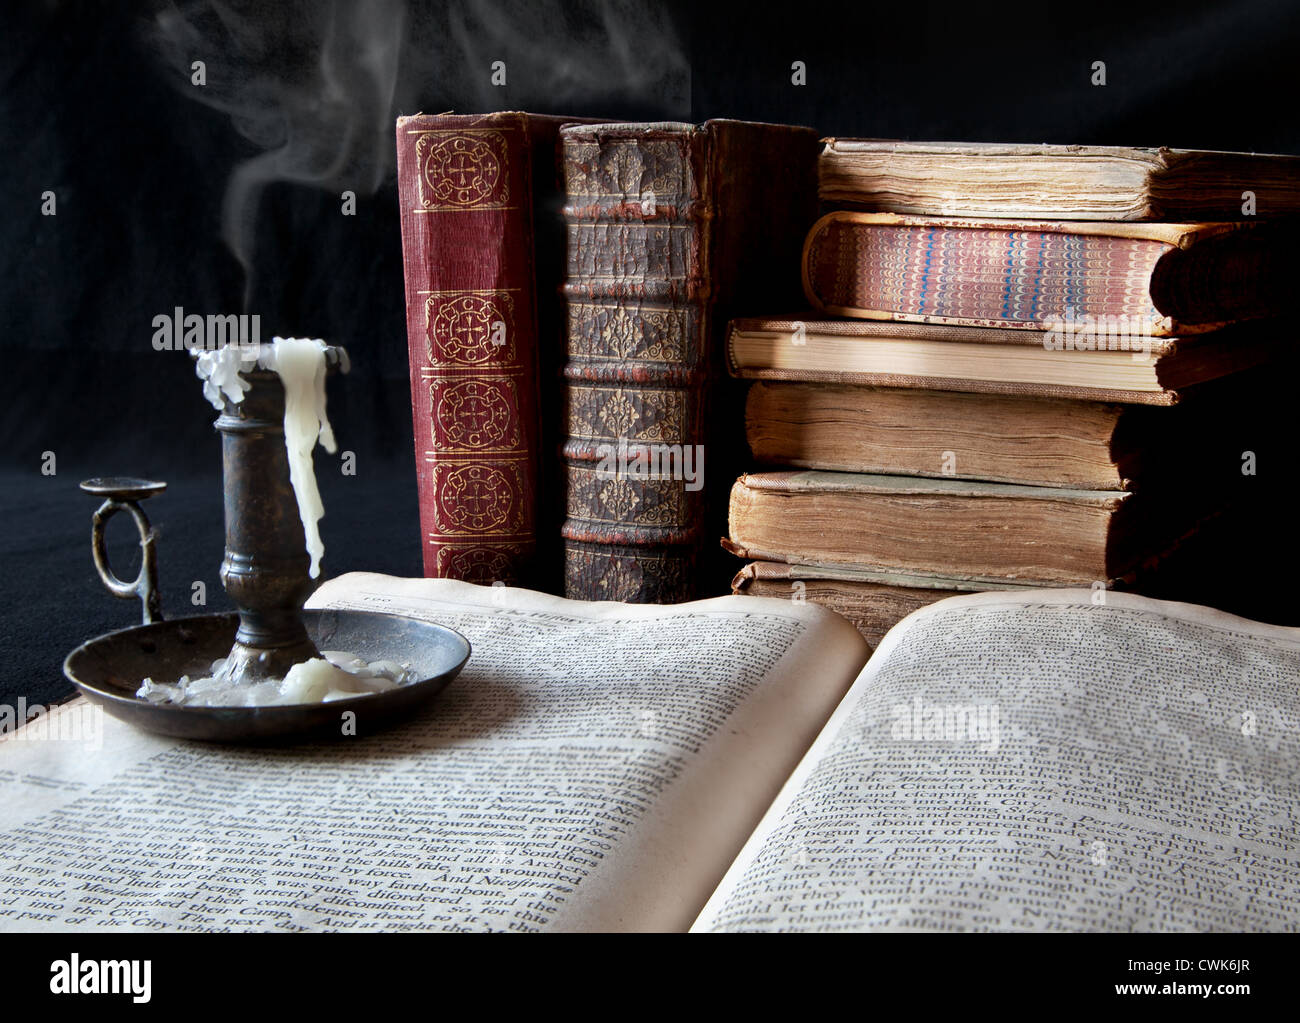 La fumée d'une chandelle éteinte dérive plus de livres anciens Banque D'Images